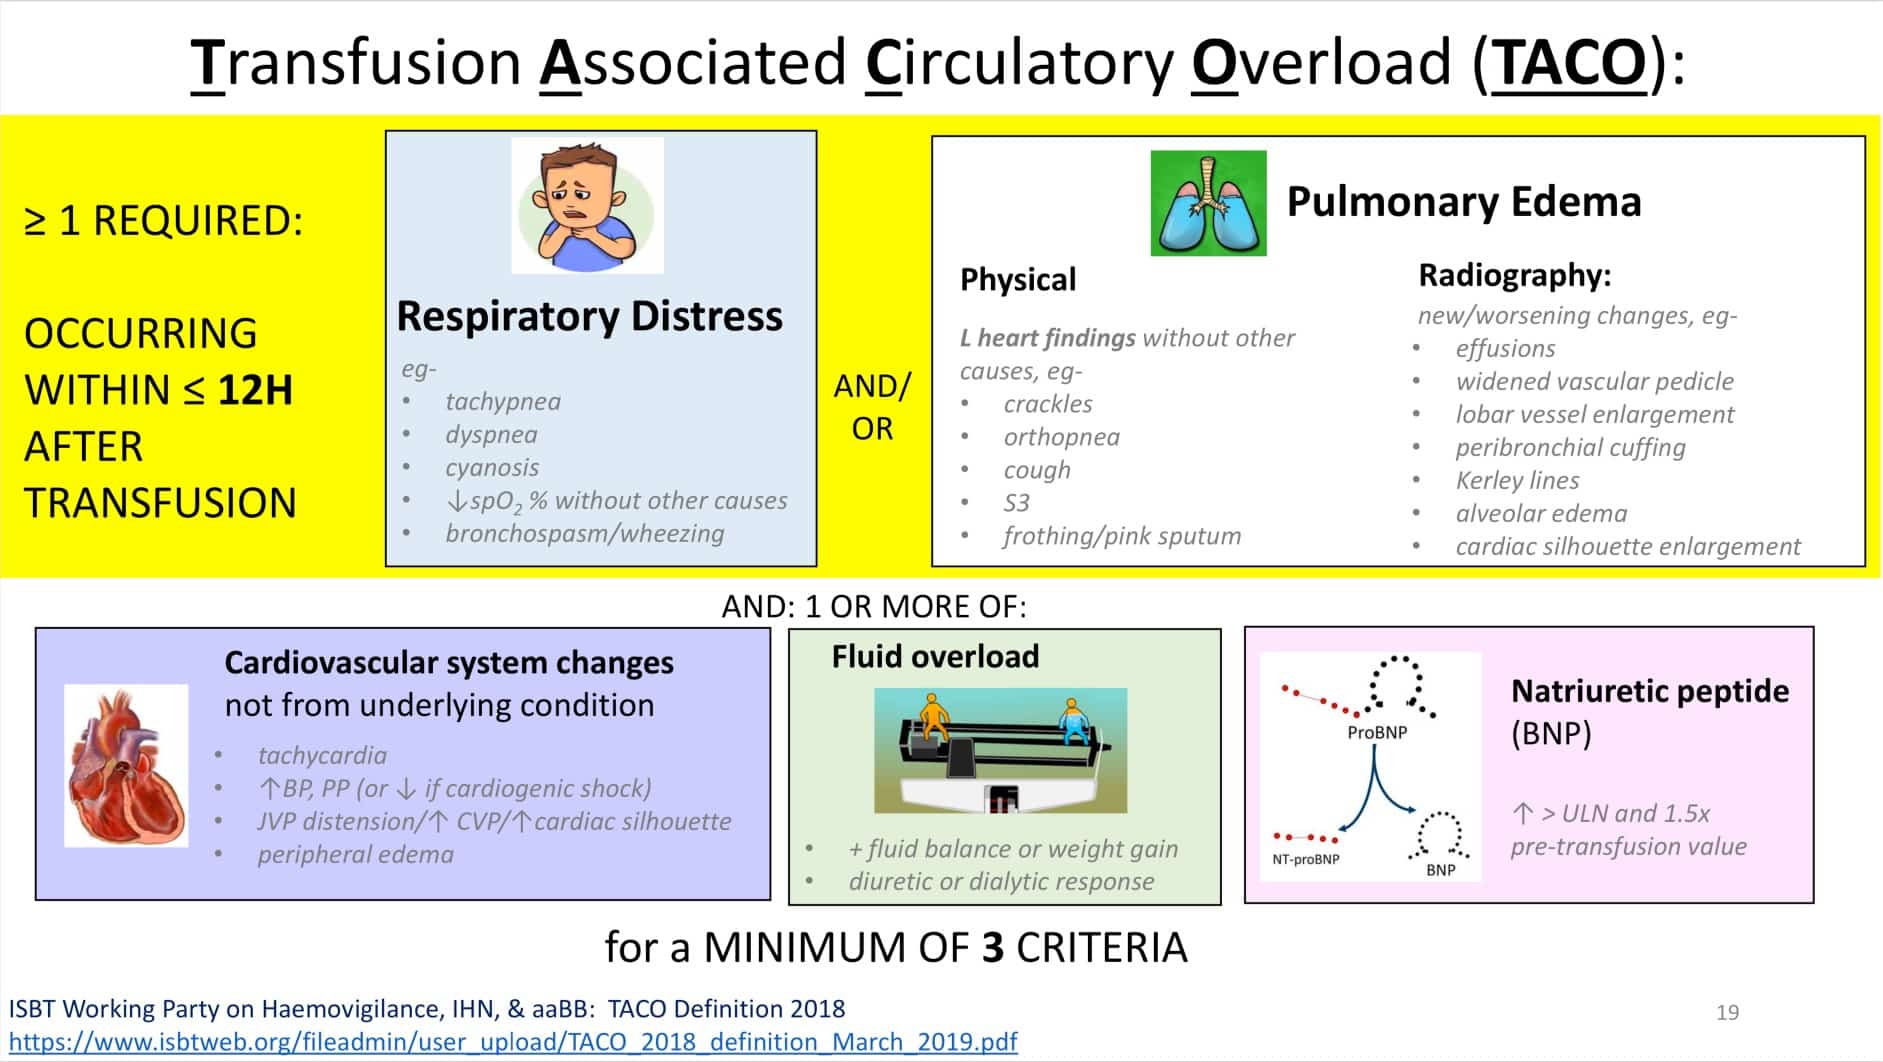 Slide 1: New diagnostic criteria for TACO